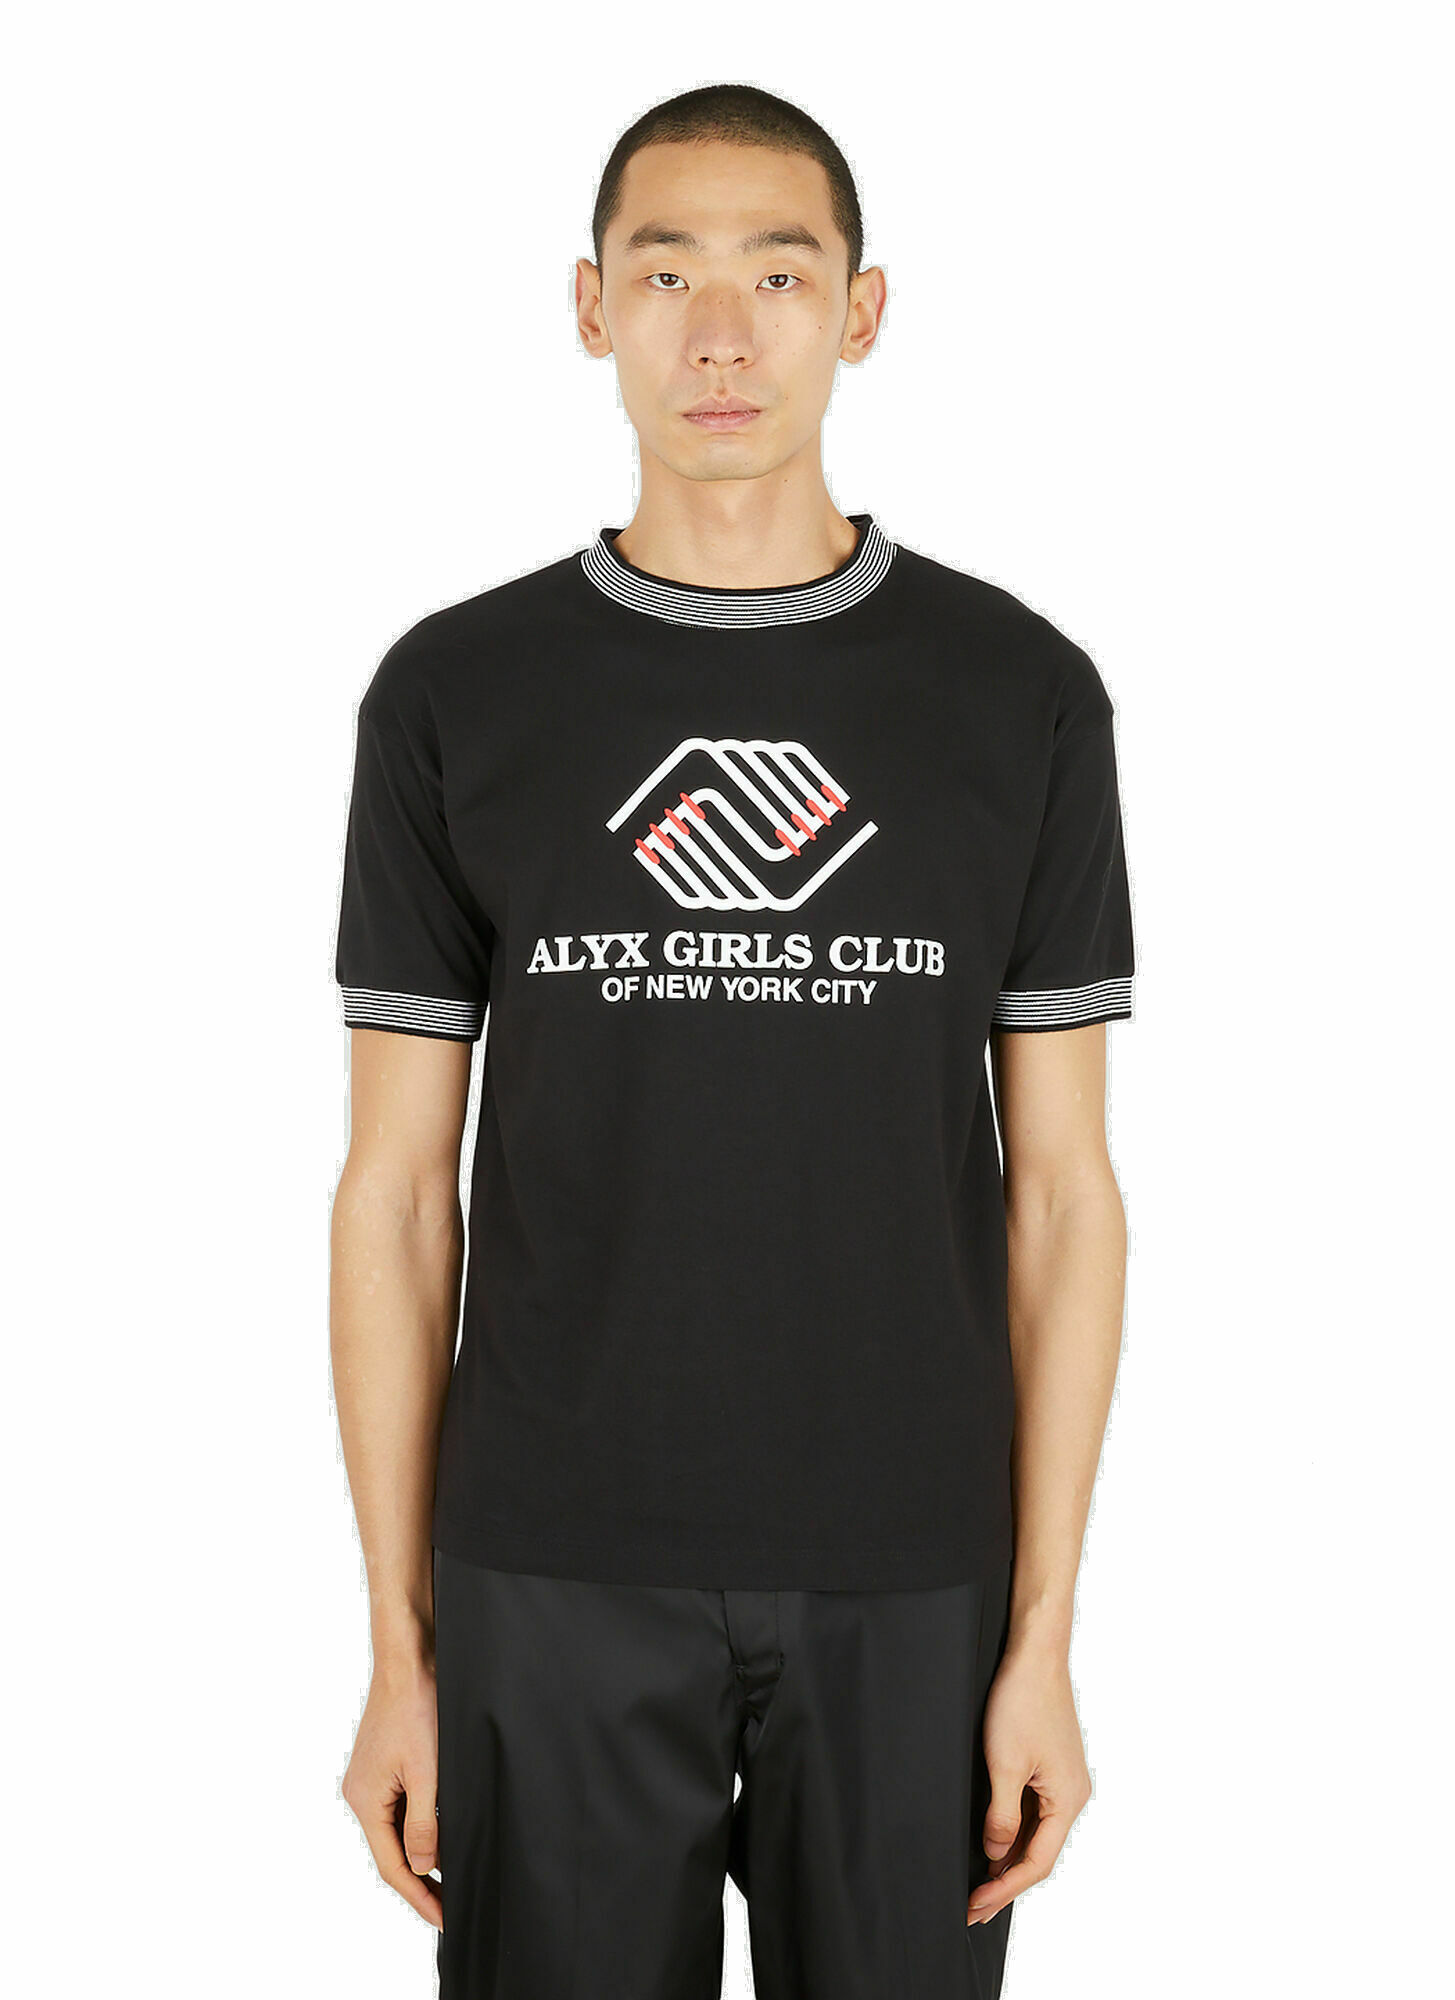 Photo: Girls Club T-Shirt in Black